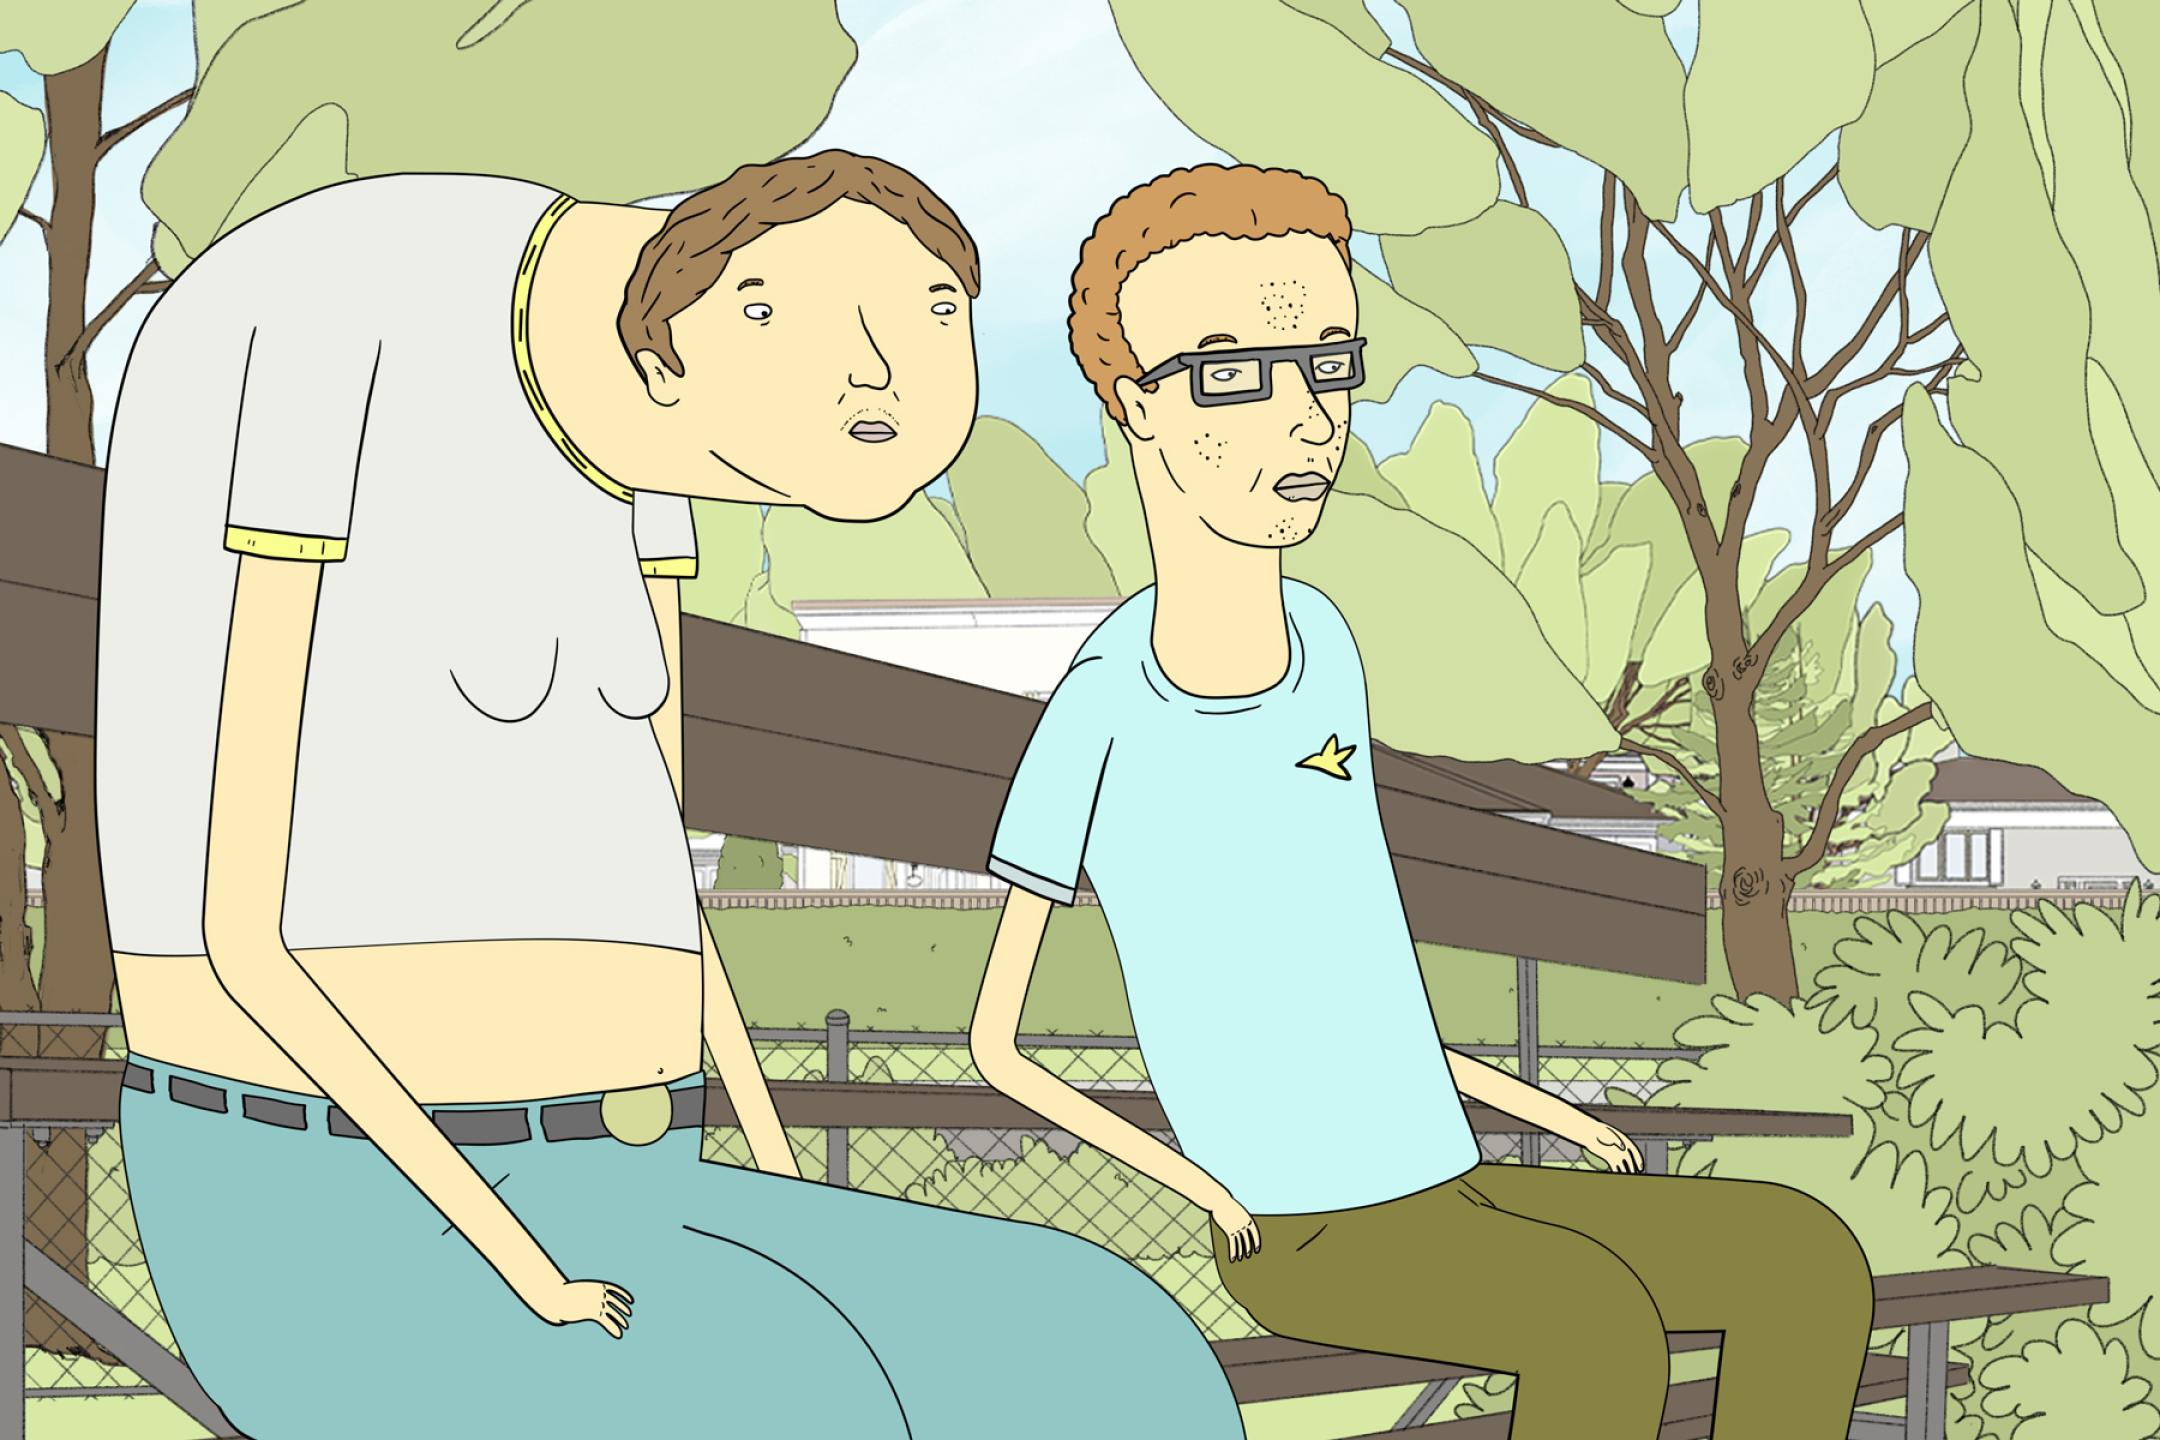 Eine Illustration: Zwei Jungen oder junge Männer sitzen nebeneinander auf einer Parkbank. Der Junge links hat einen Buckel und einen sehr langen Hals.